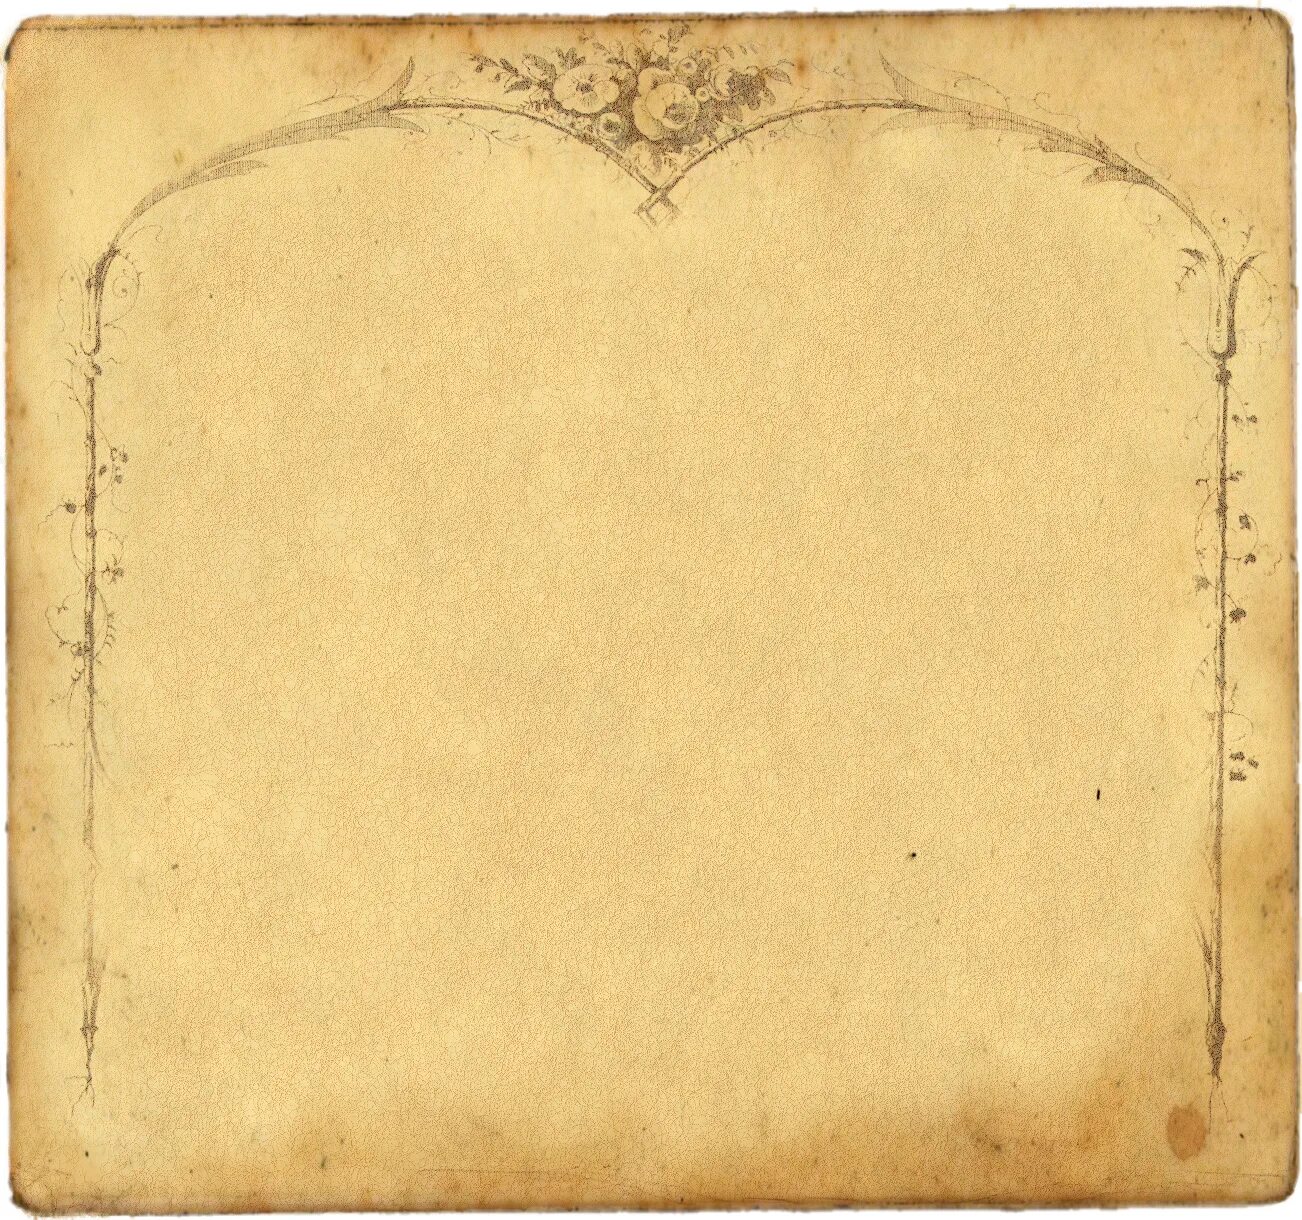 Бумага 18 век. Старинная бумага фон. Фон под старину. Старый лист бумаги. Фон в винтажном стиле.